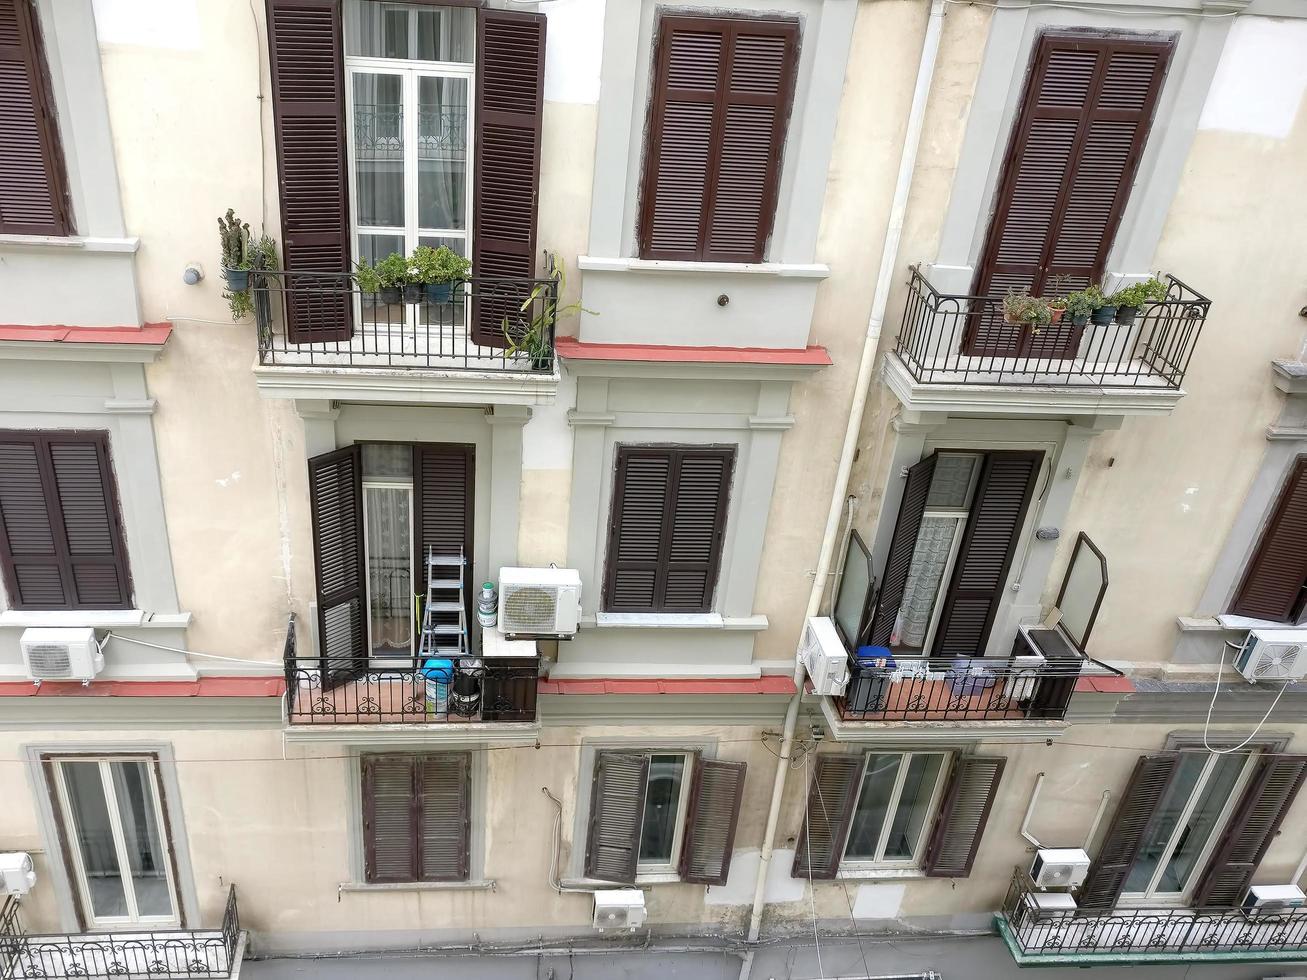 Ventanas, balcones y contraventanas de un edificio de apartamentos italiano foto